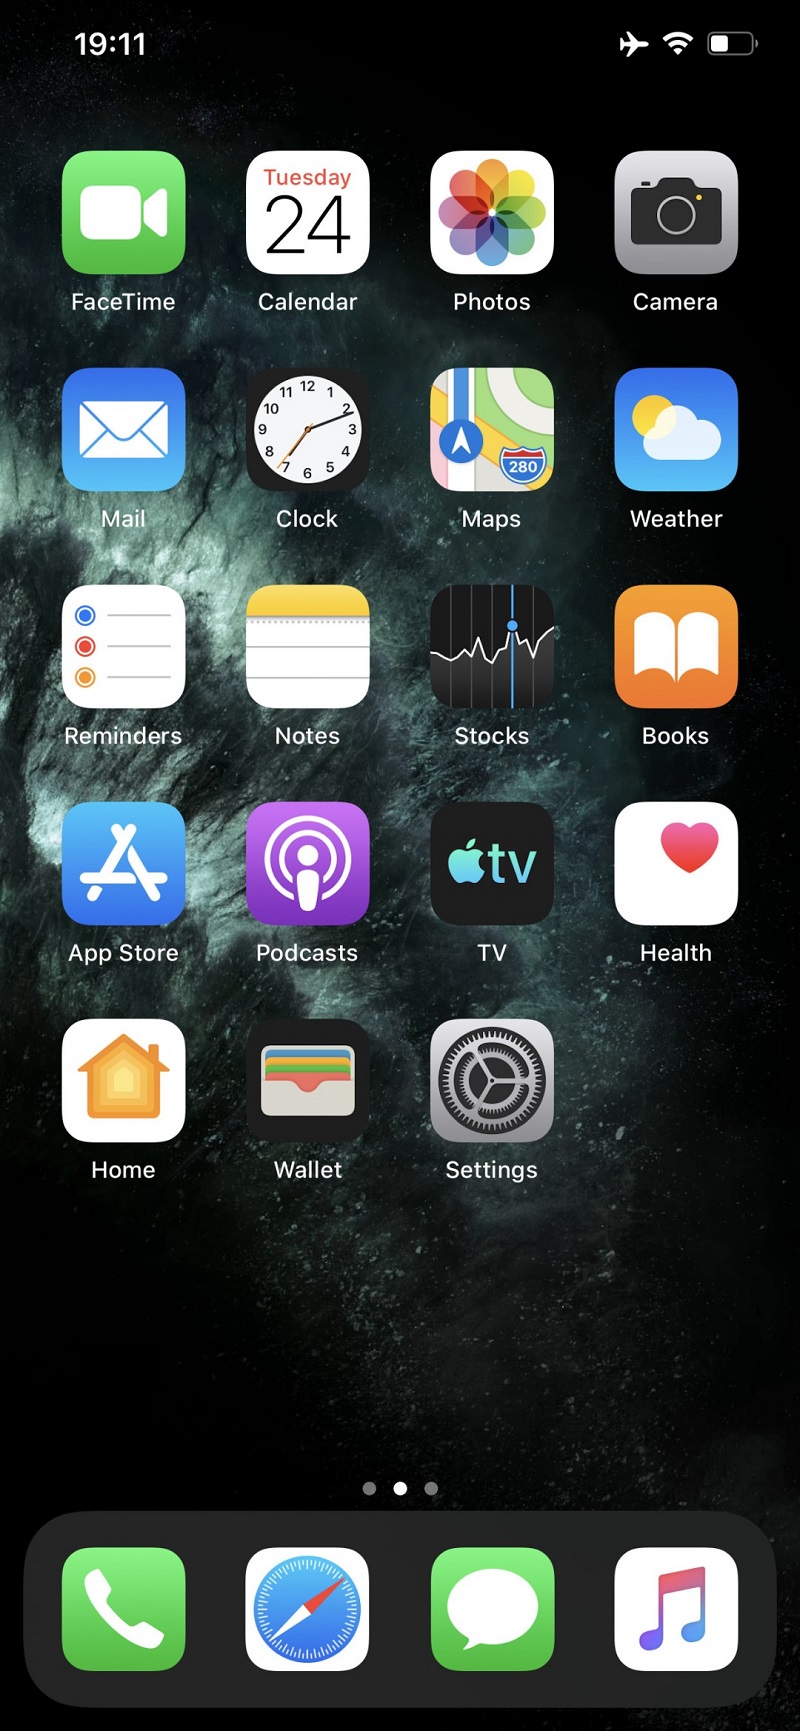 Sforum - Trang thông tin công nghệ mới nhất gsmarena_007-6 Đánh giá Apple iPhone 11 Pro/11 Pro Max: Khả năng chụp hình tốt, dung lượng pin cải thiện vượt bậc 